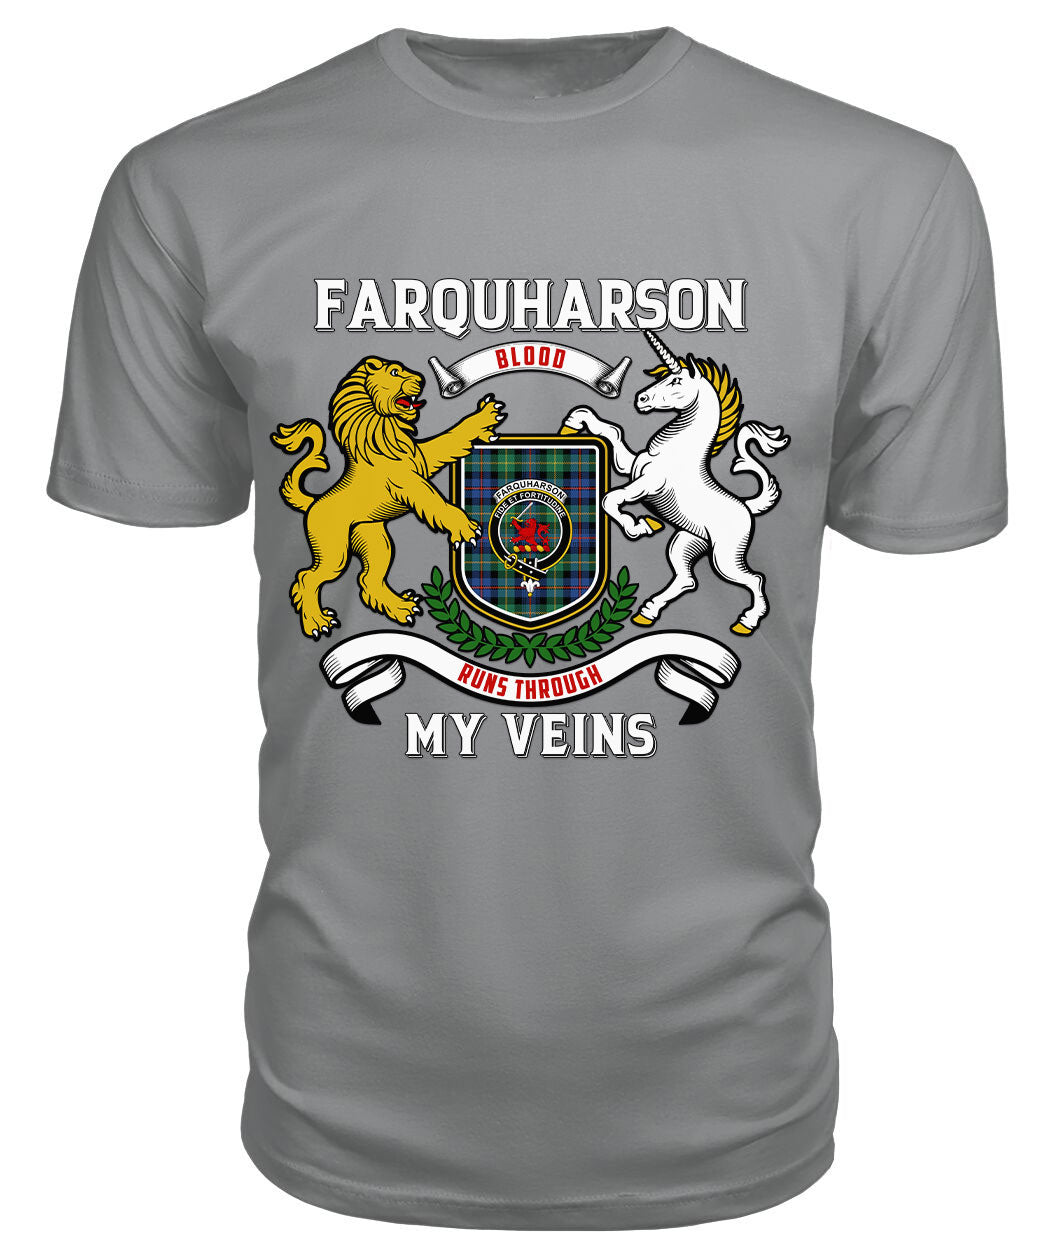 Farquharson Ancient Tartan Crest 2D T-shirt - Blood Runs Through My Veins Style